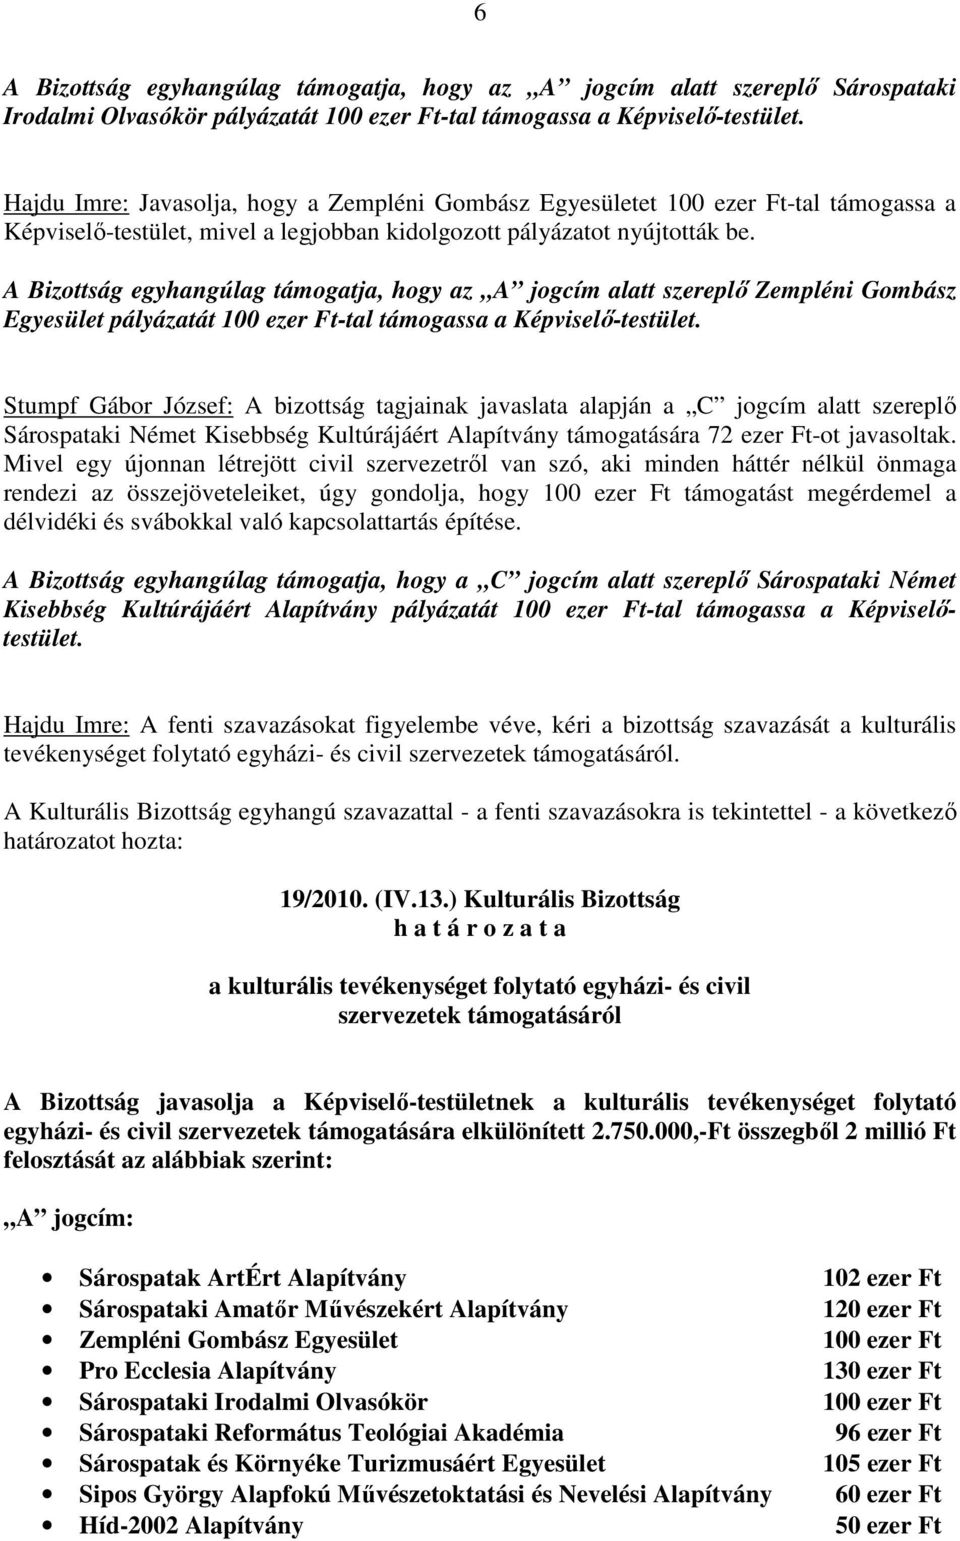 A Bizottság egyhangúlag támogatja, hogy az A jogcím alatt szereplı Zempléni Gombász Egyesület pályázatát 100 ezer Ft-tal támogassa a Képviselı-testület.